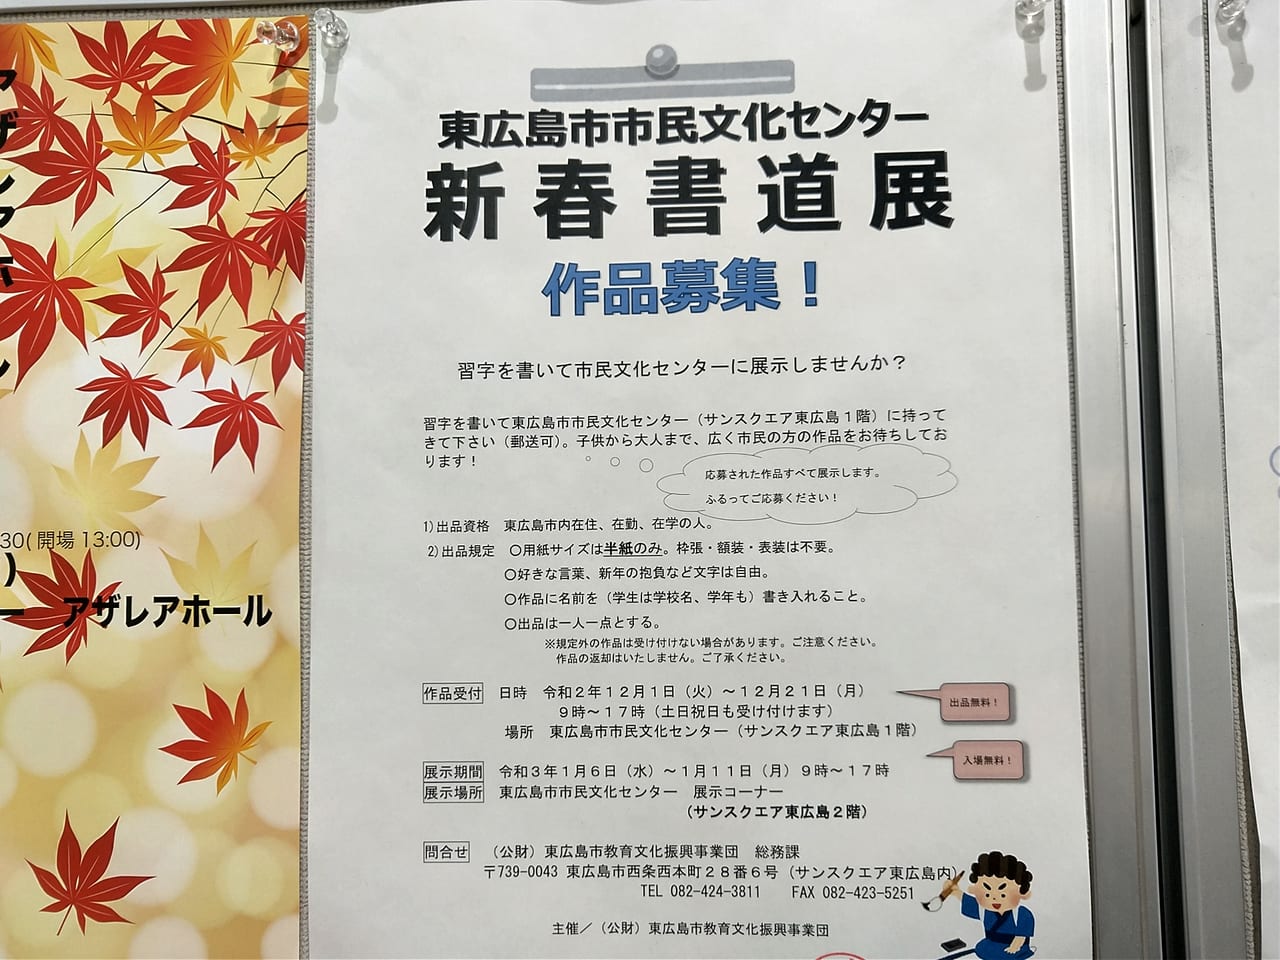 東広島市民文化センター「新春書道展」作品募集のチラシ